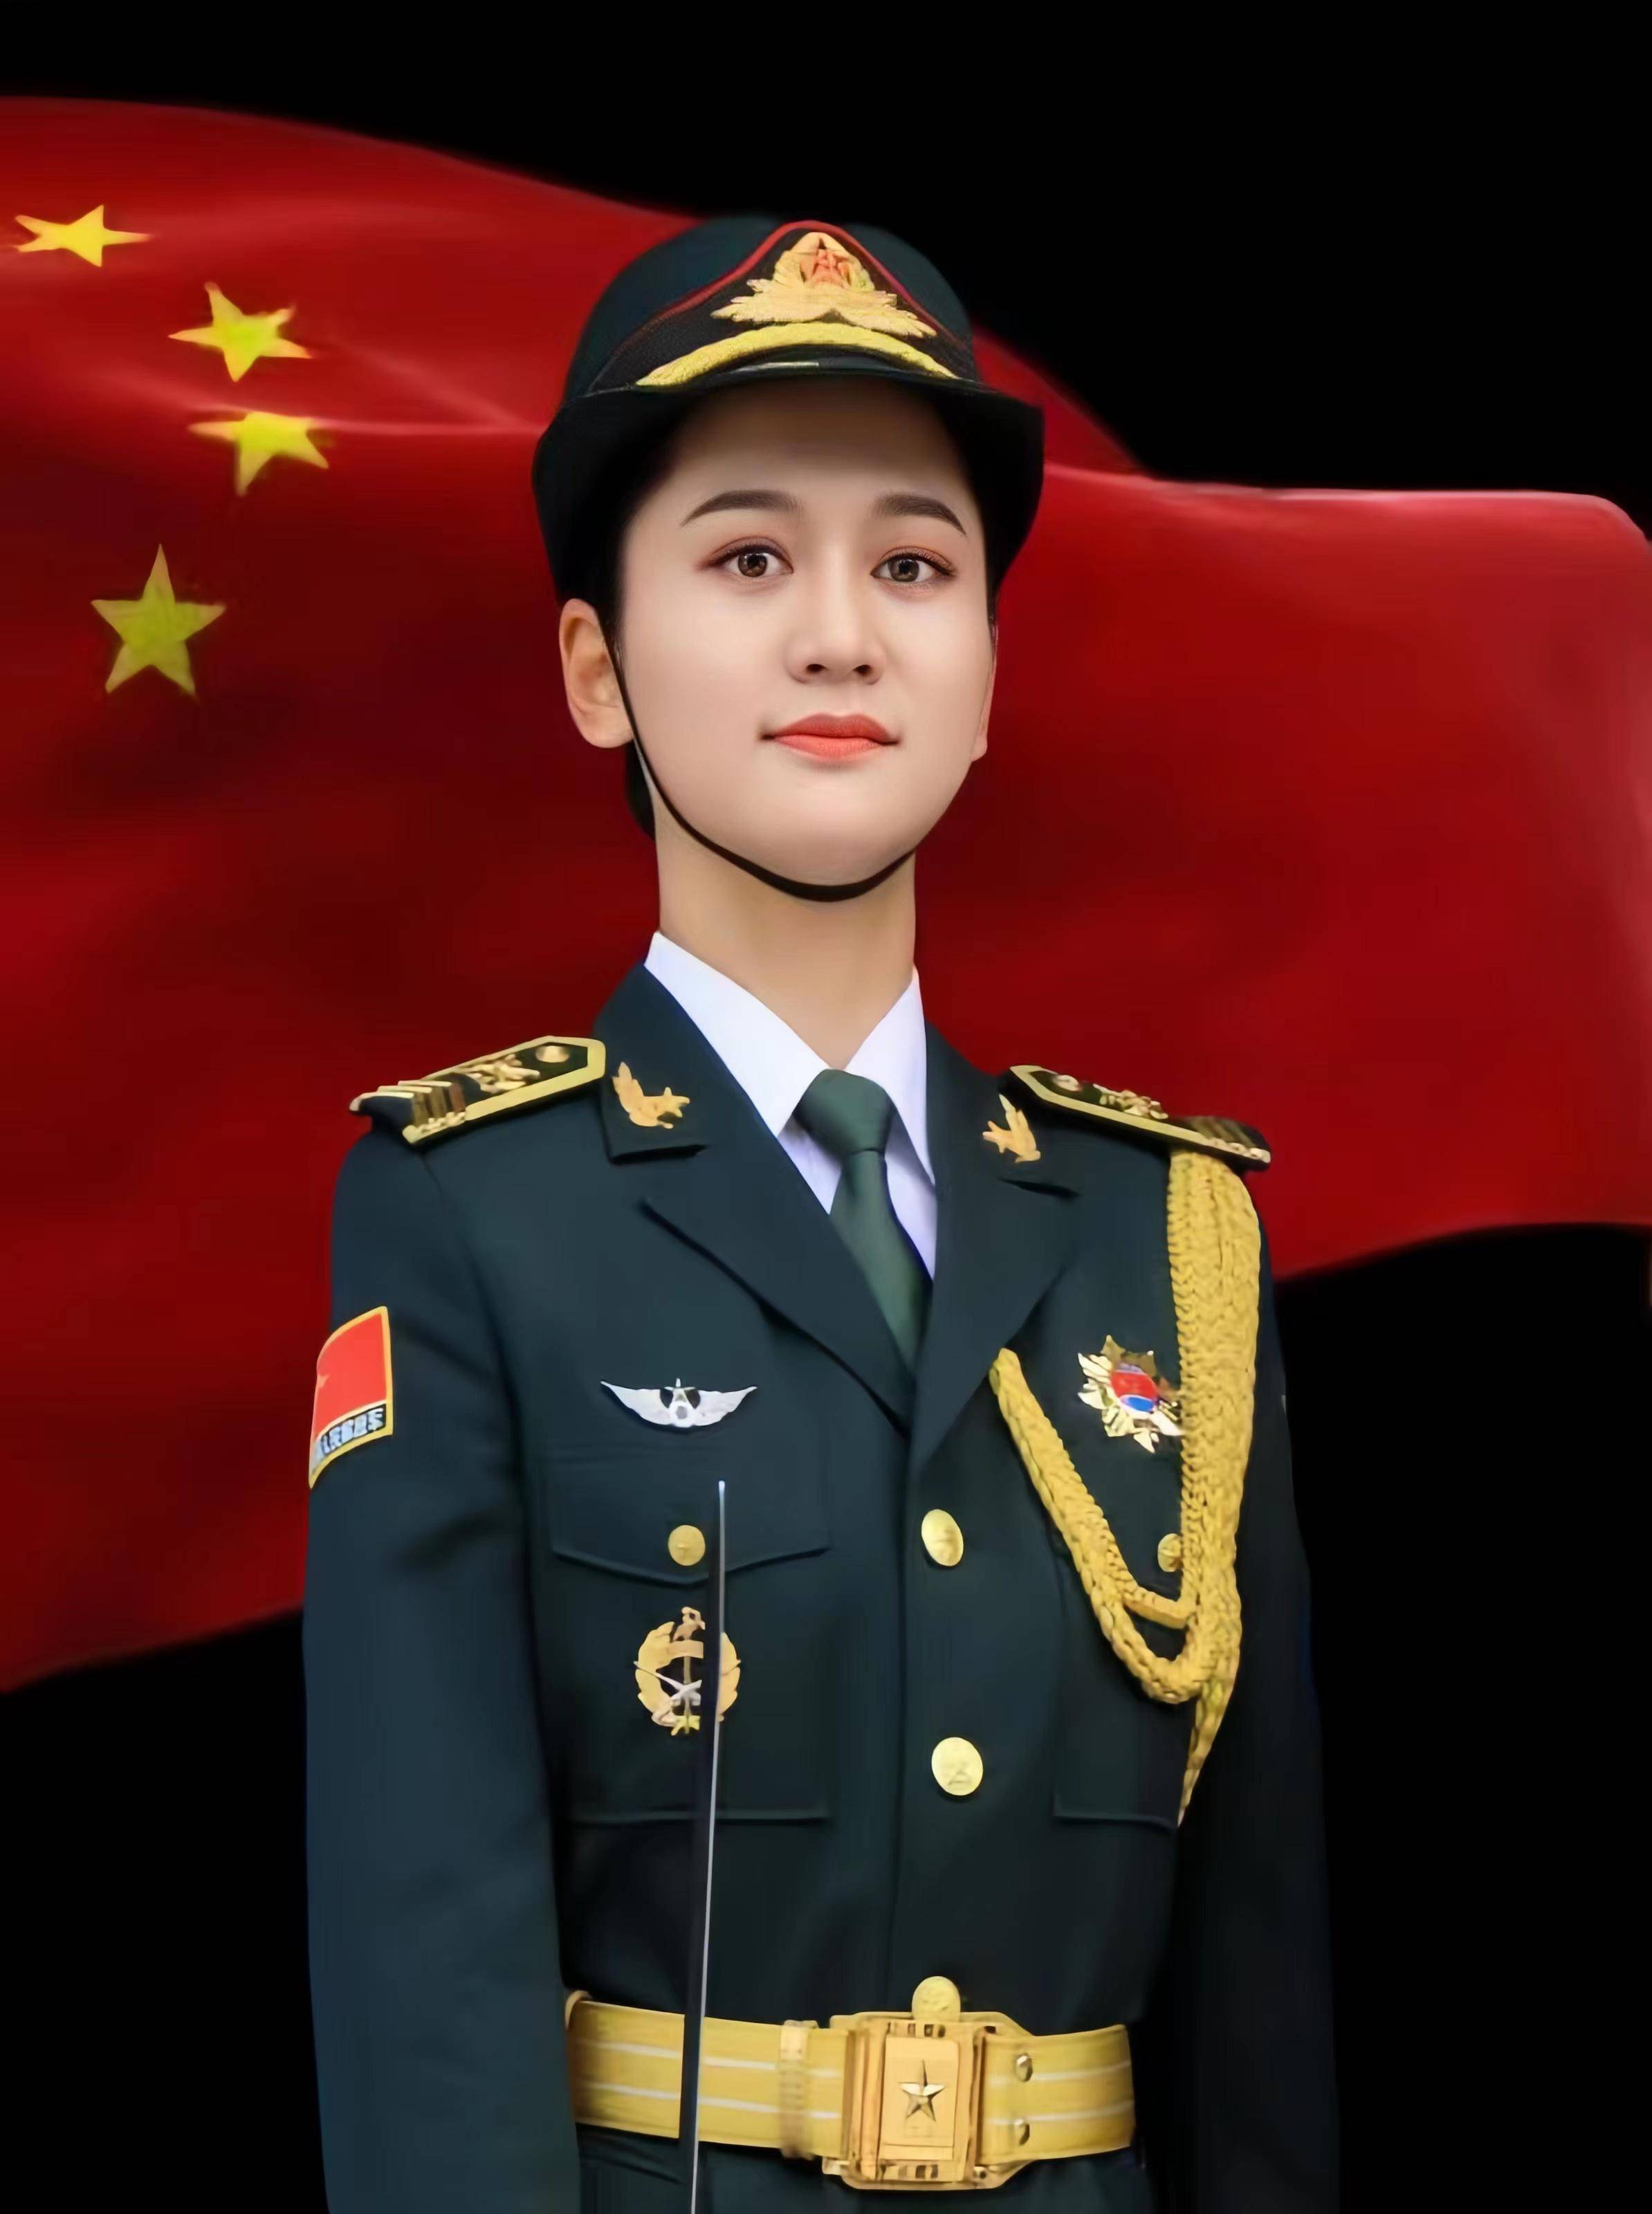 加入了我国唯一一支担负国家级仪仗司礼任务的部队——中国人民解放军